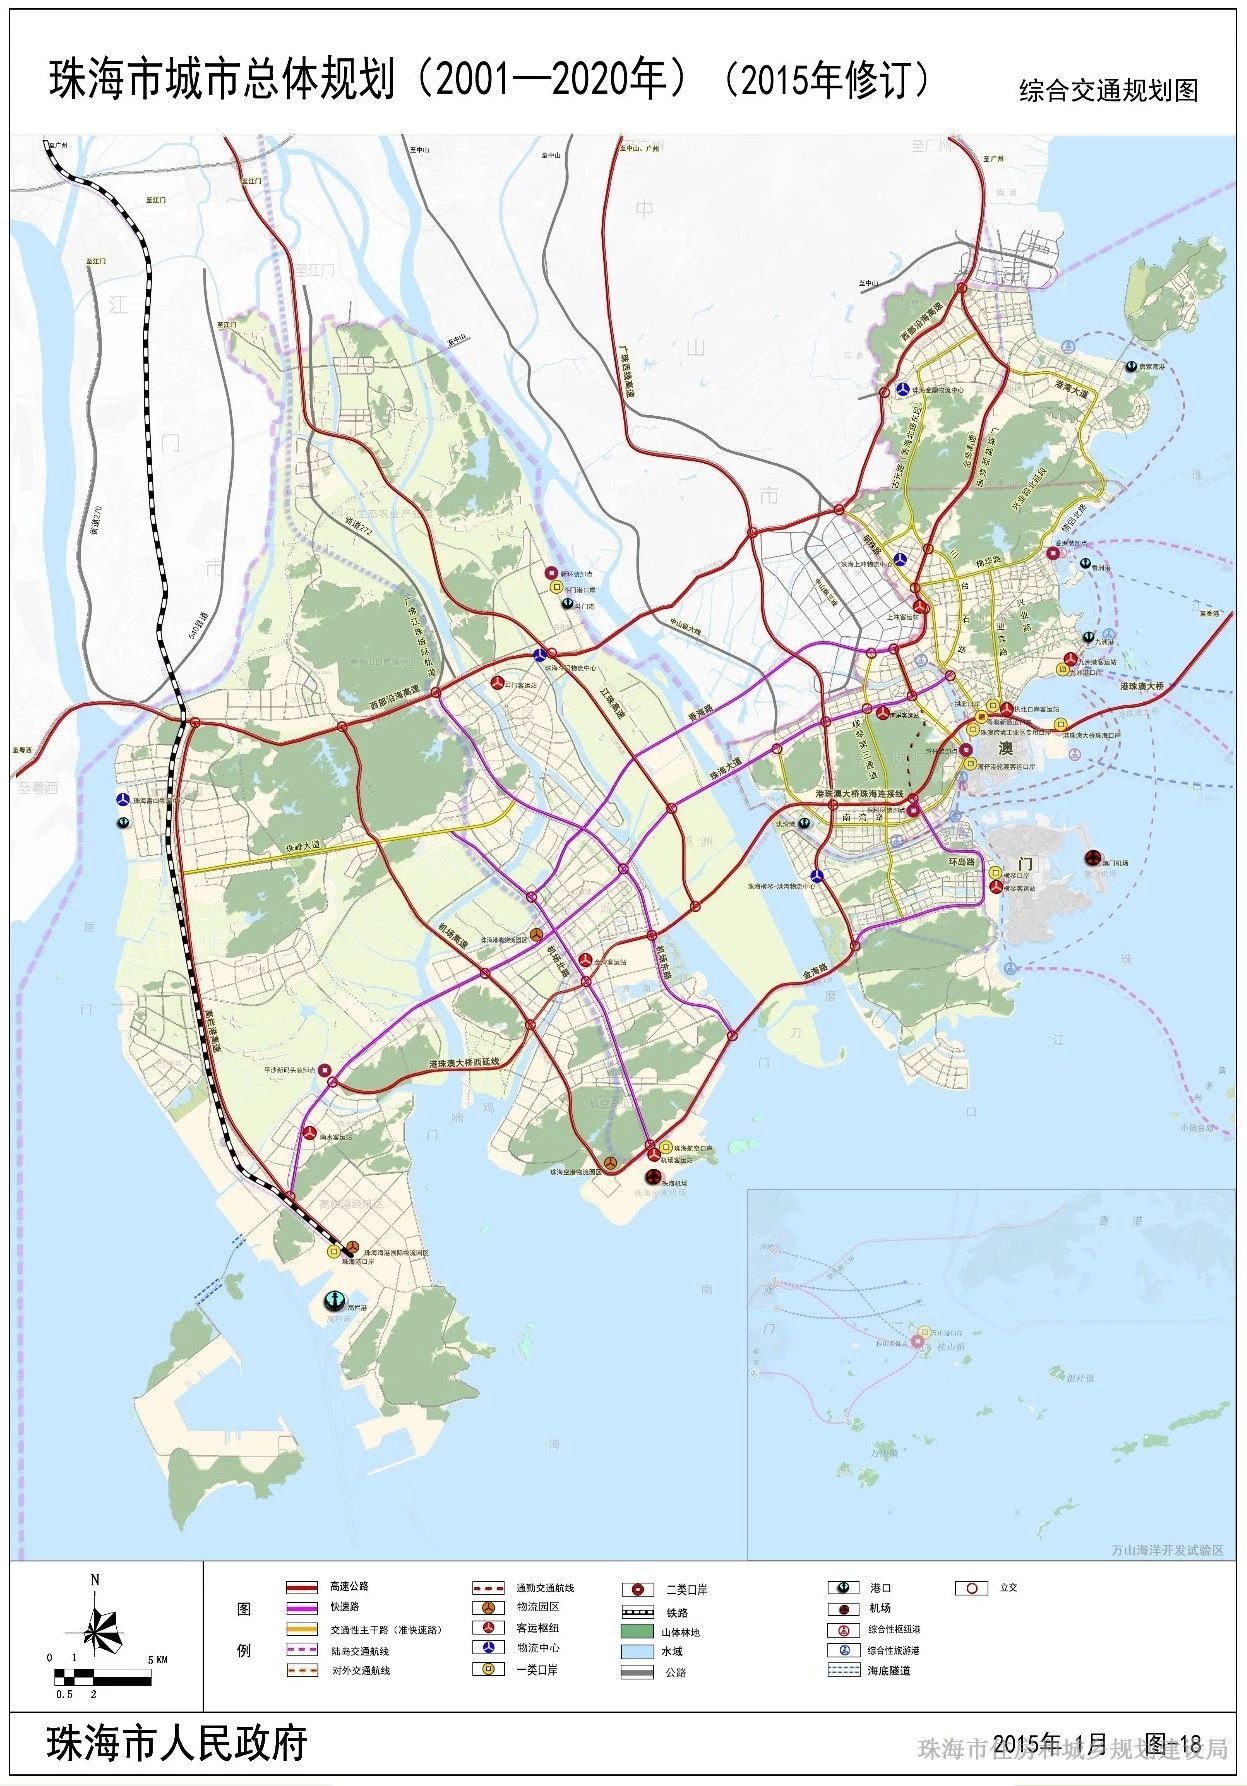 珠海市综合交通规划图,图表来源:珠海市住房和城乡规划建设局